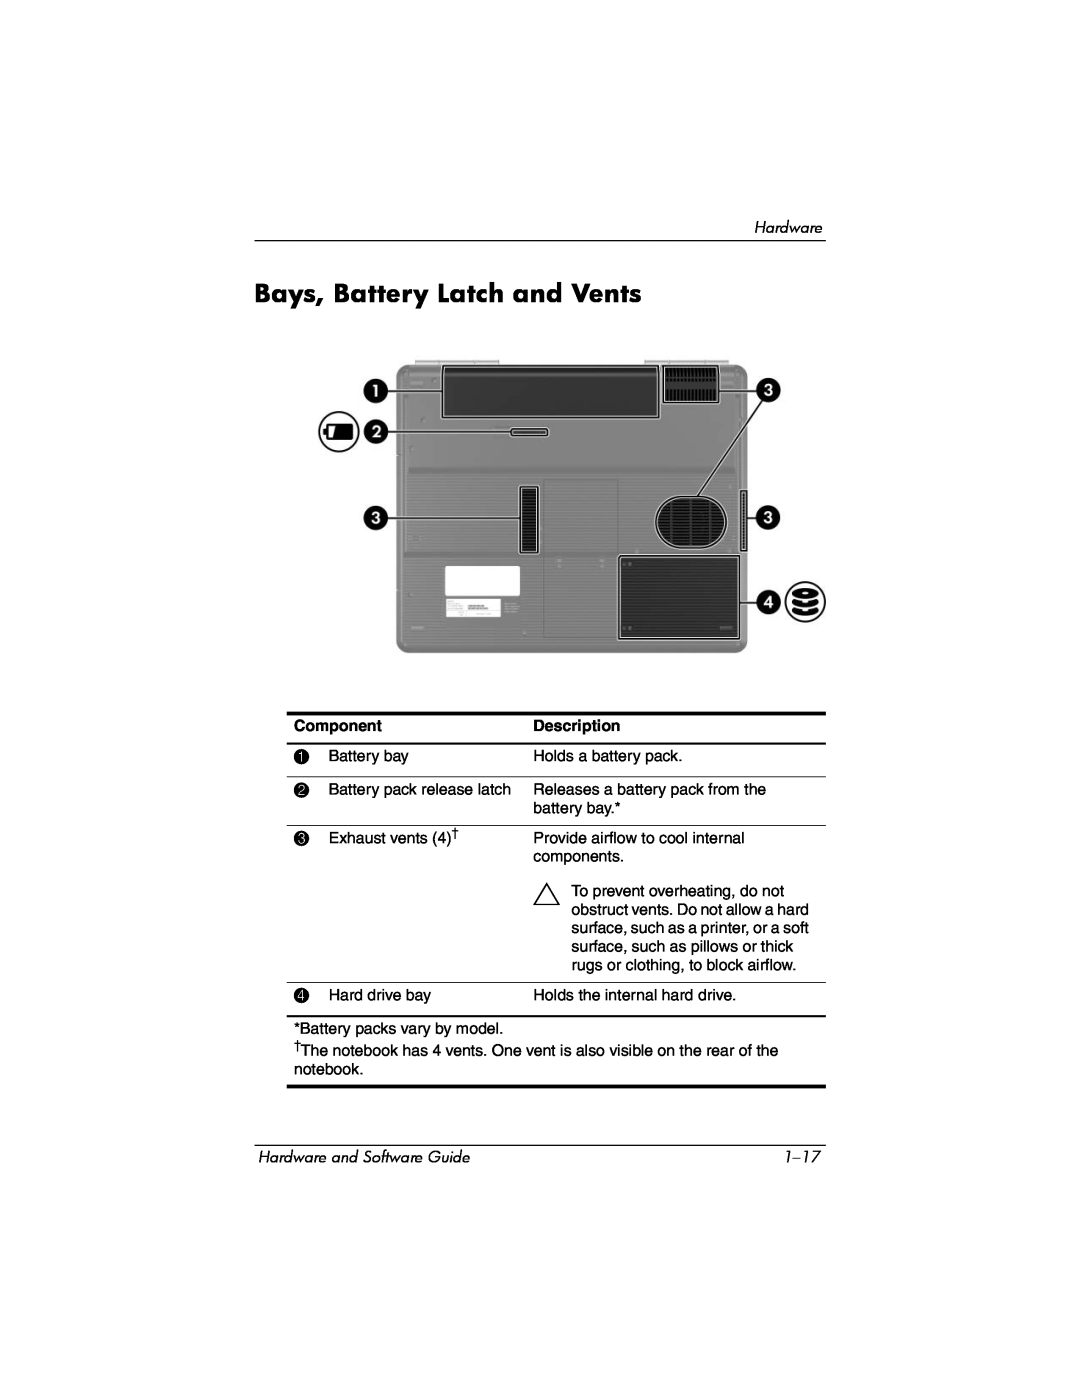 Compaq Presario M2000 manual Bays, Battery Latch and Vents, Component, Description 